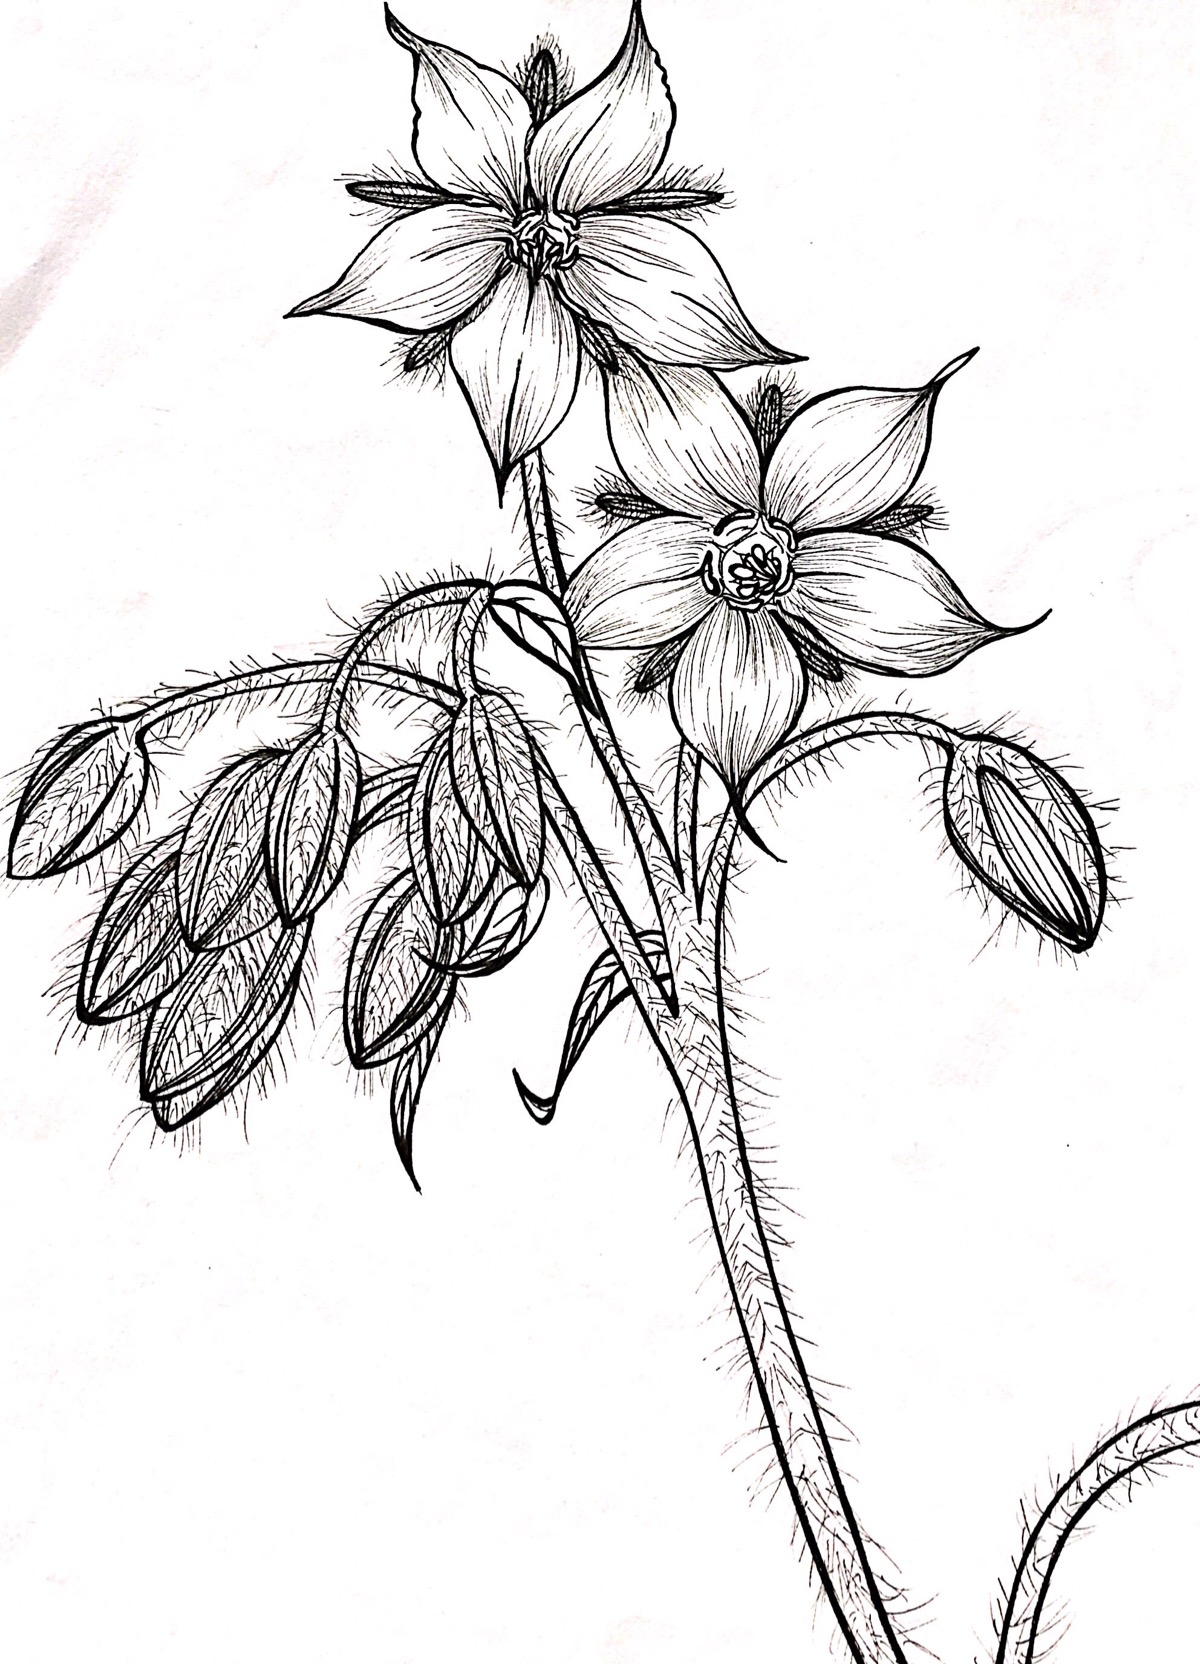 近期作业,手绘花卉植物